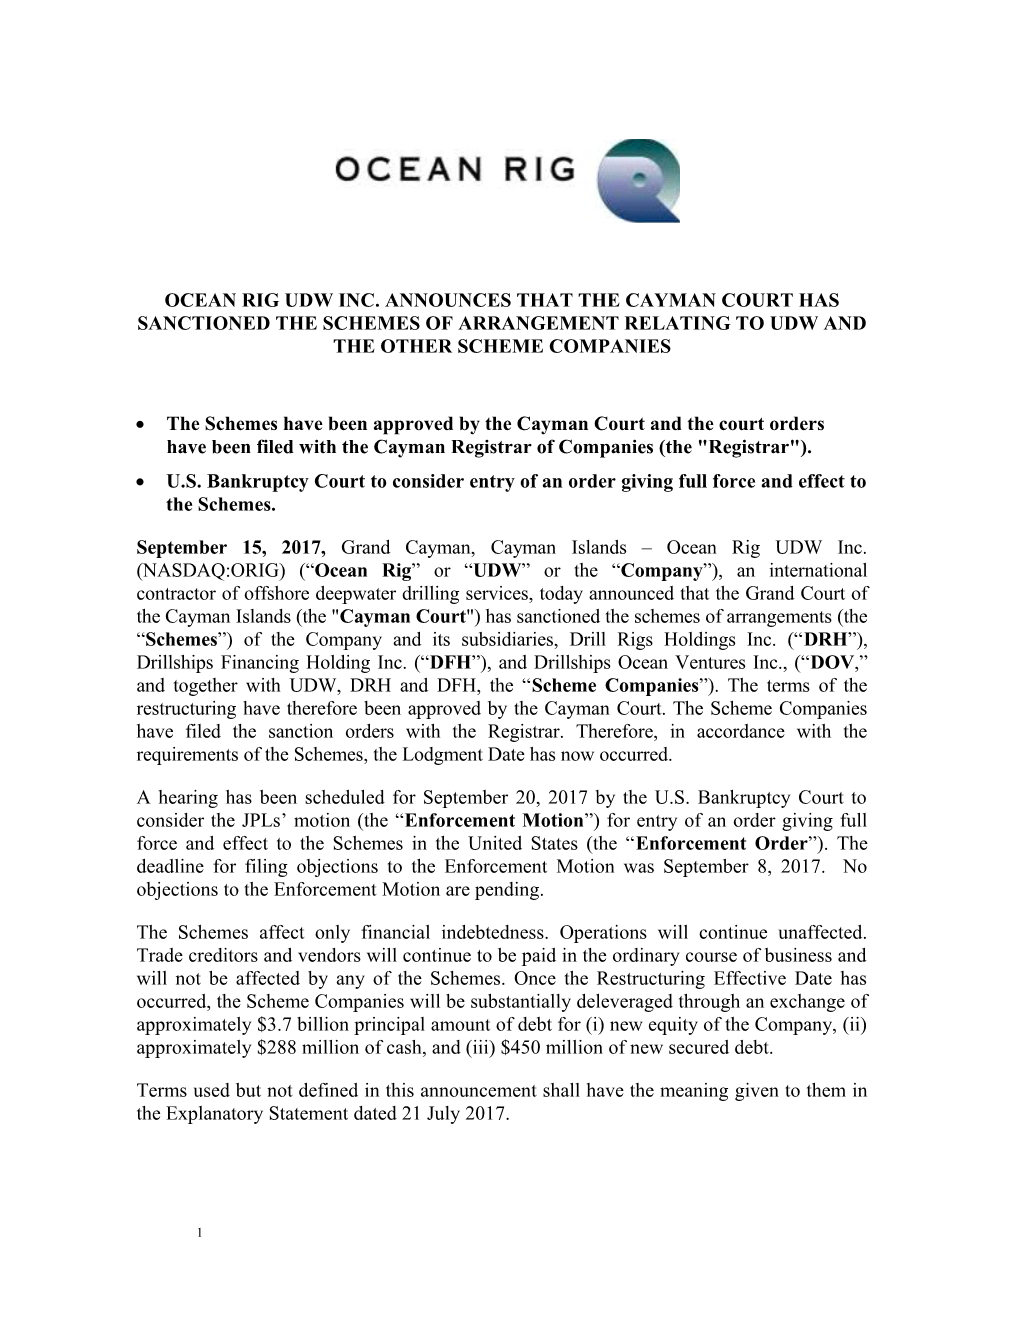 Ocean Rig Udw Inc. Announces Thatthe Cayman Court Has Sanctioned the Schemes of Arrangement